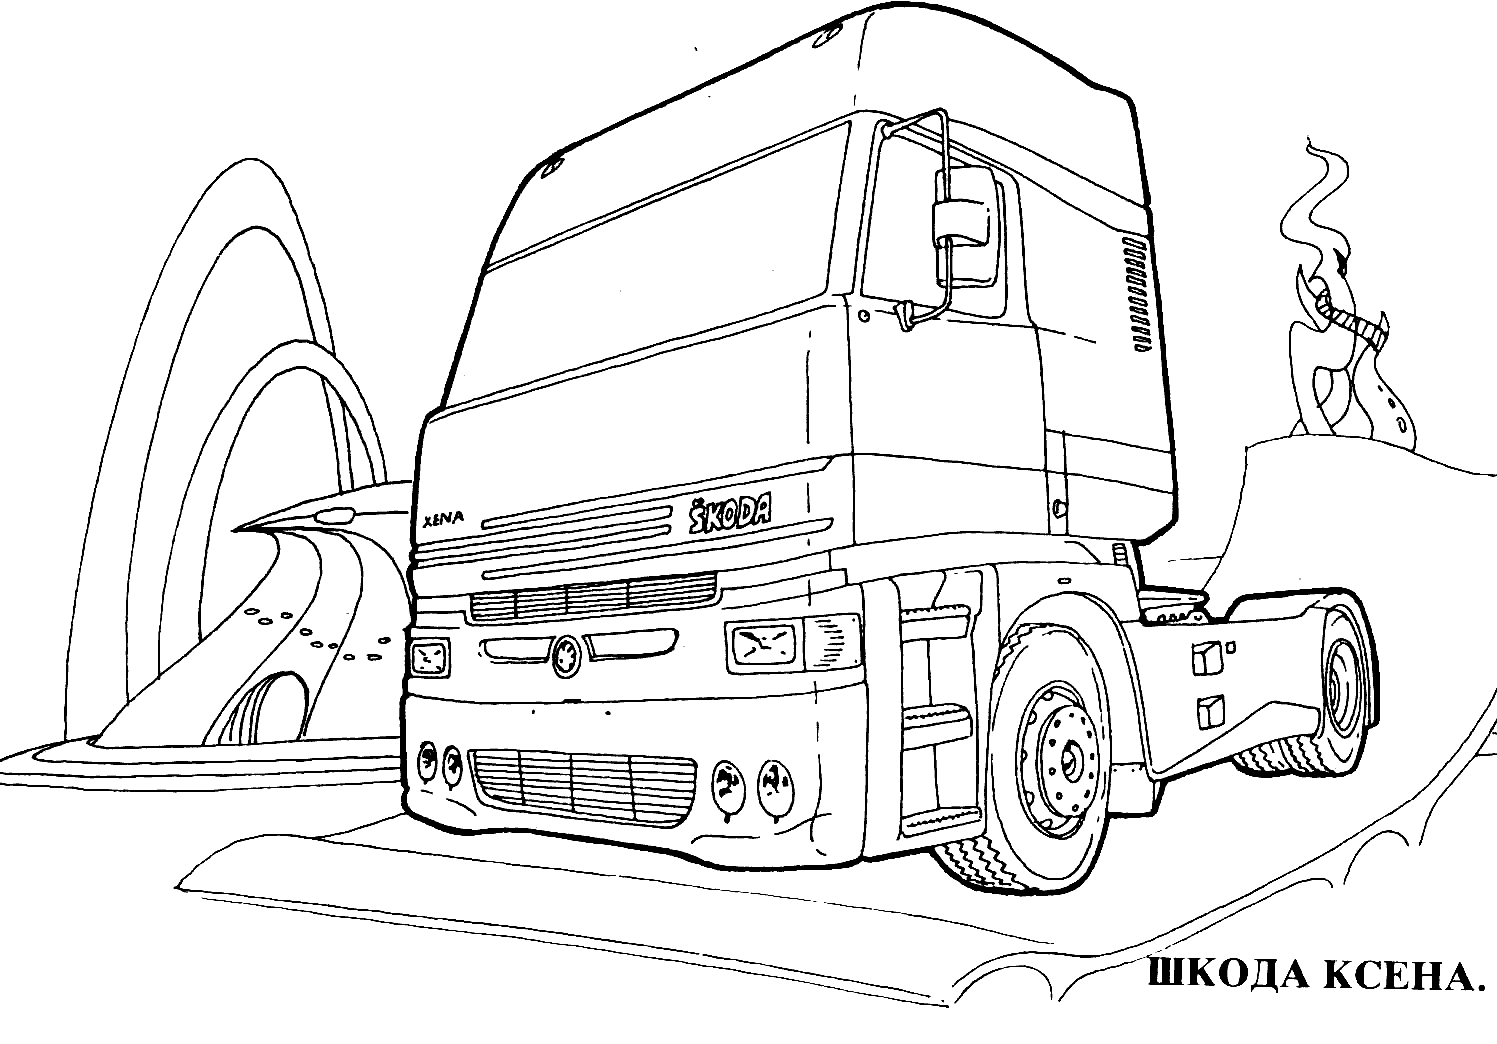 Раскраски Камаз посвящены одному из самых известных грузовиков, которые делаются в России Выберите понравившиеся раскраски Камаза, а затем бесплатно скачайте или распечатайте их в формате А4